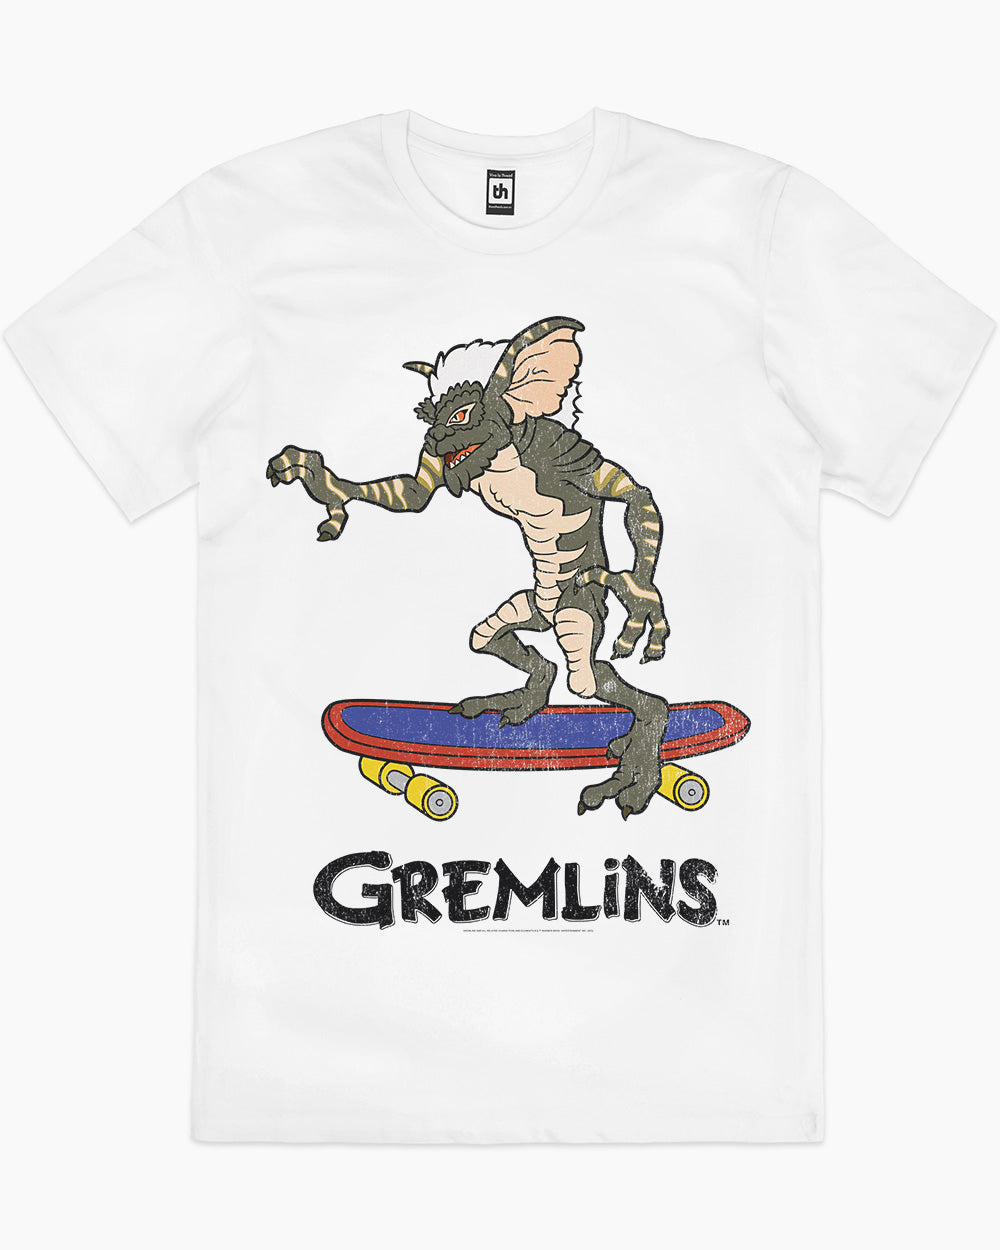 Gremlins Skate T-Shirt, Official Gremlins Merch